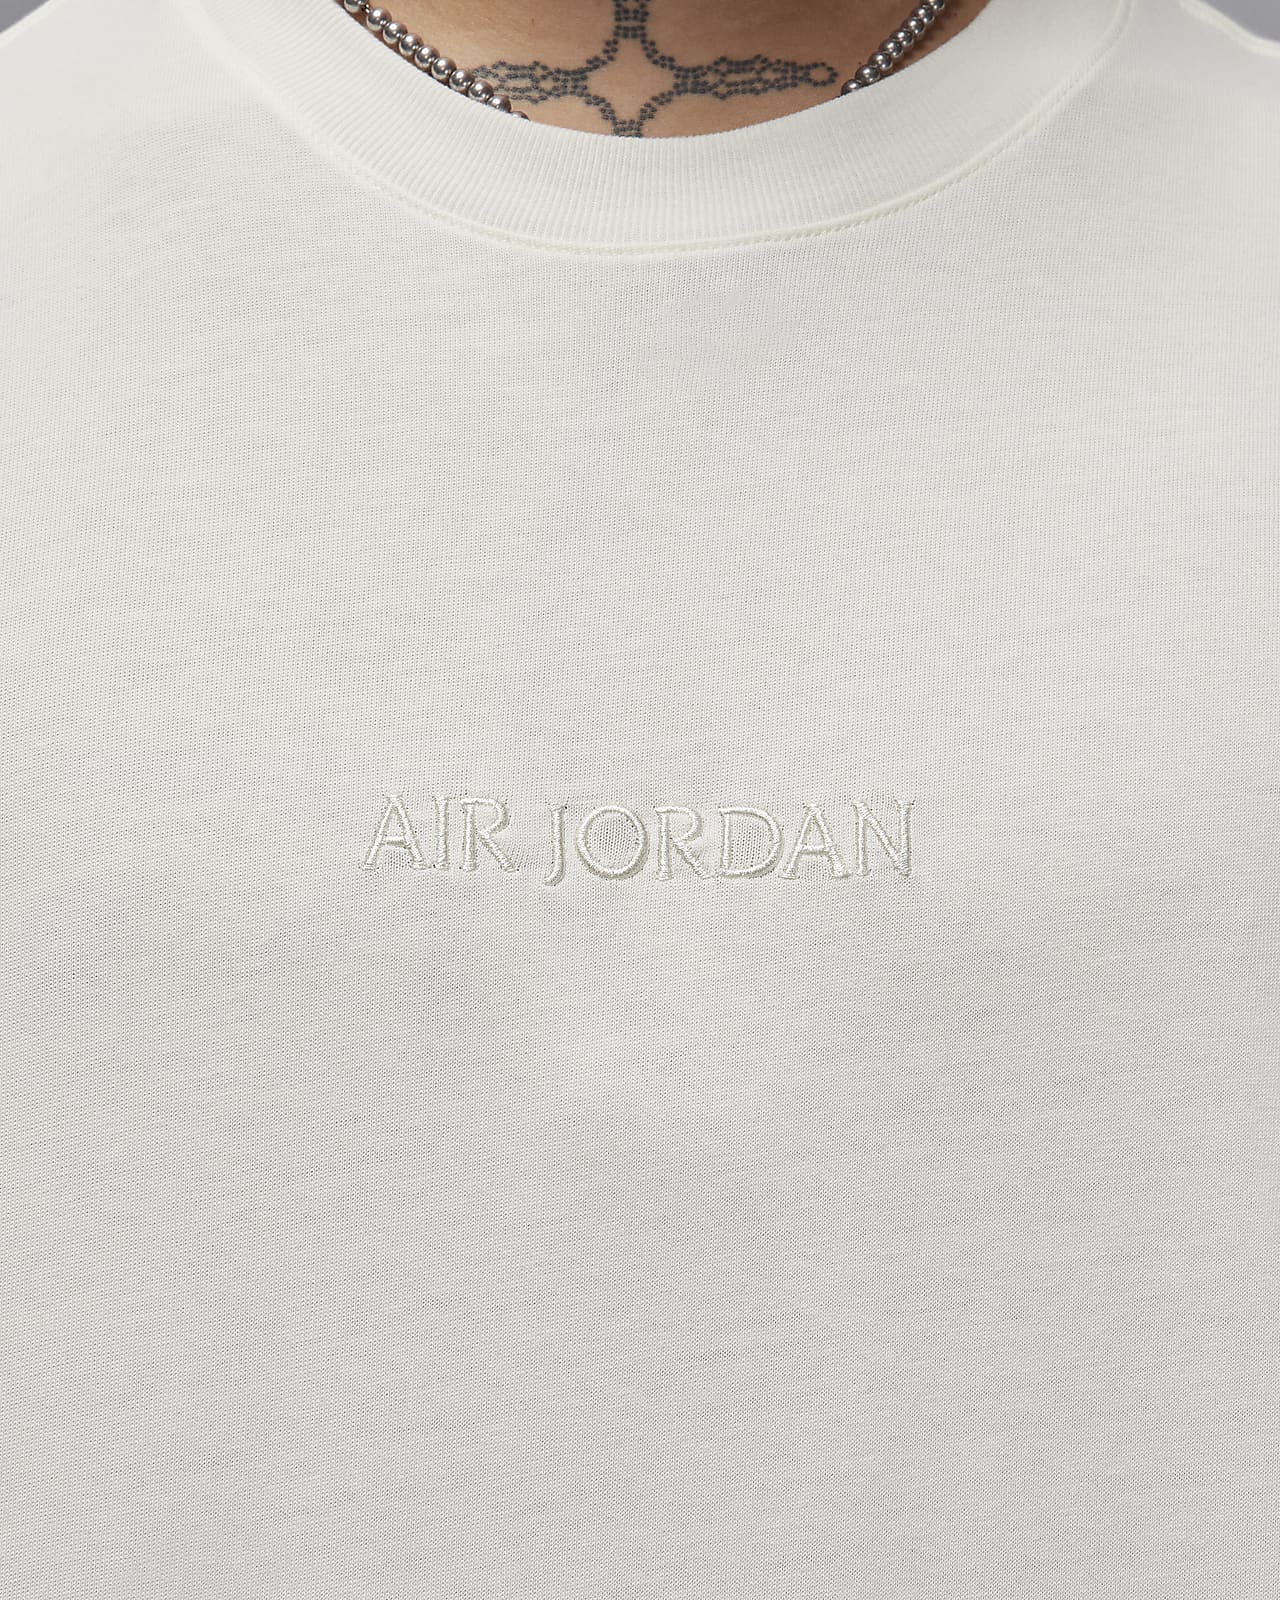 Air Jordan Wordmark Men's T-Shirt. Nike LU